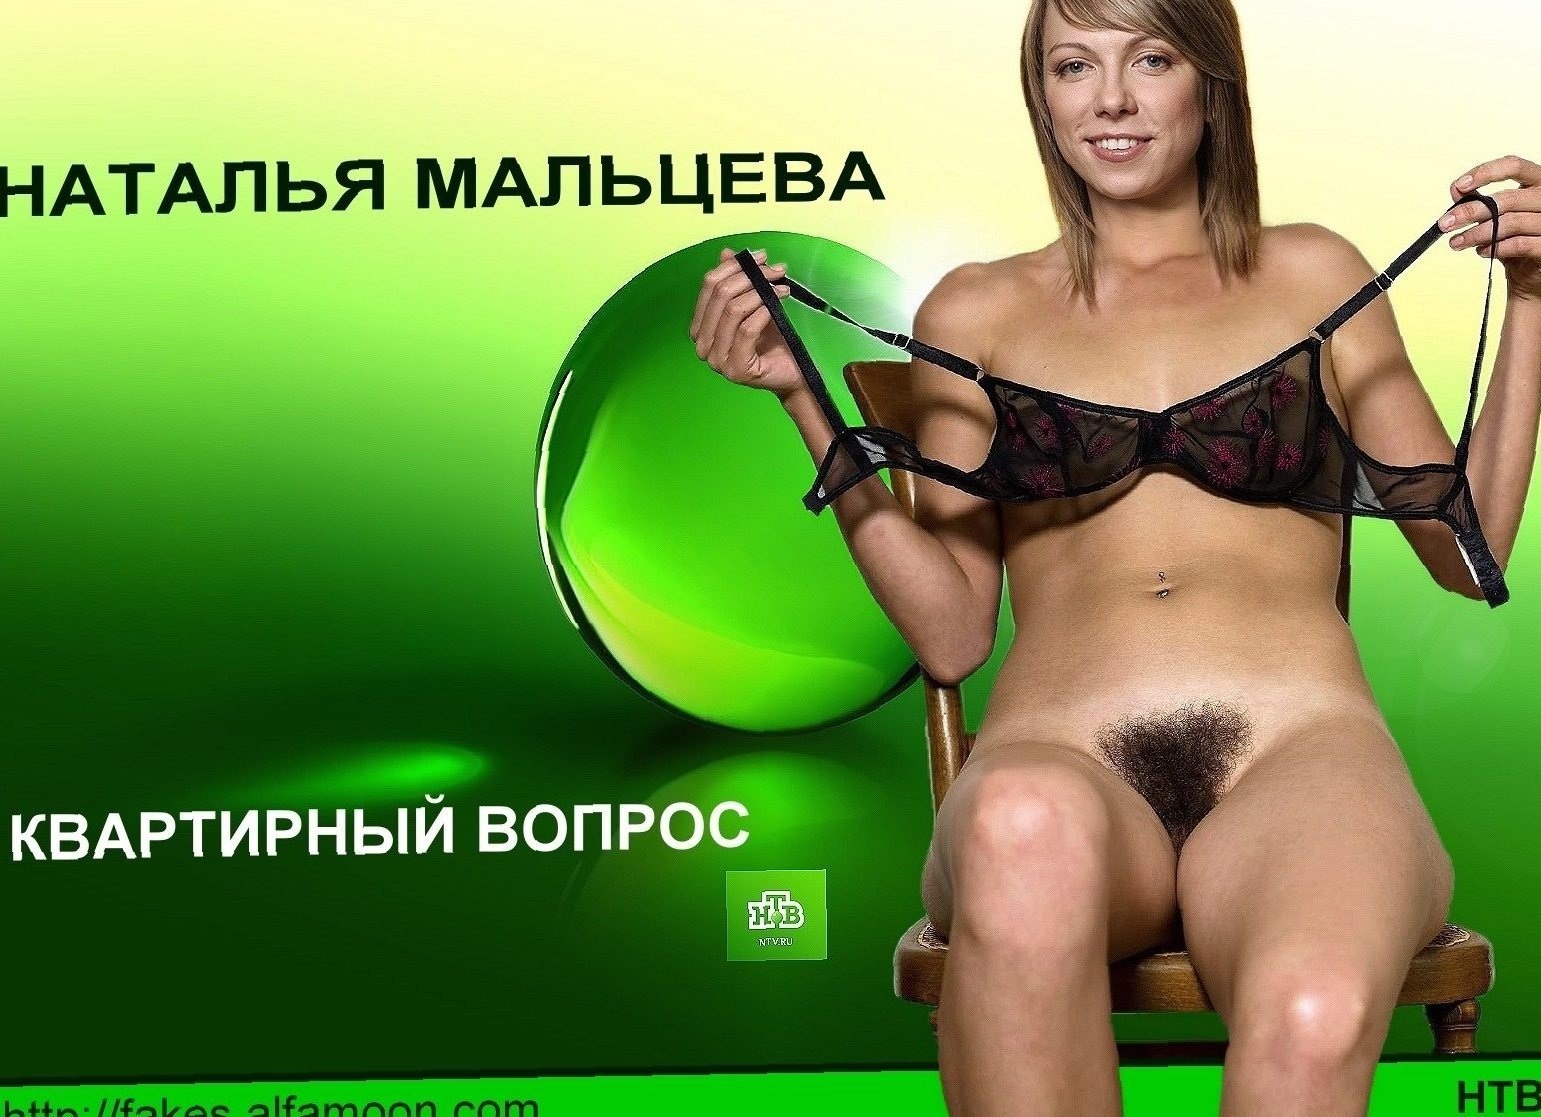 Эротические телеведущие - фото порно devkis